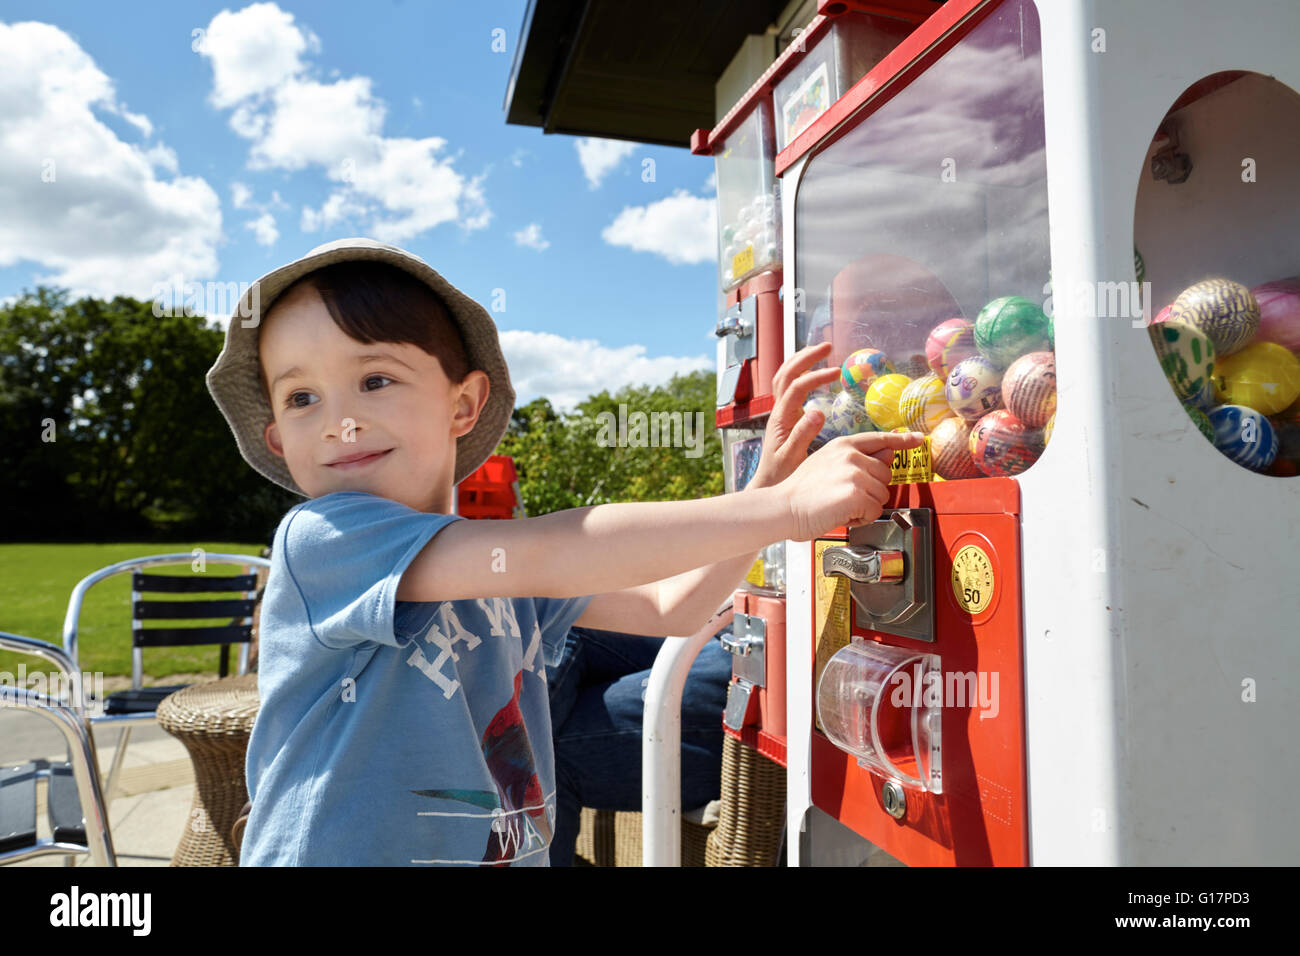 Fröhlicher Junge zeigt auf Gumball Maschine Stockfoto